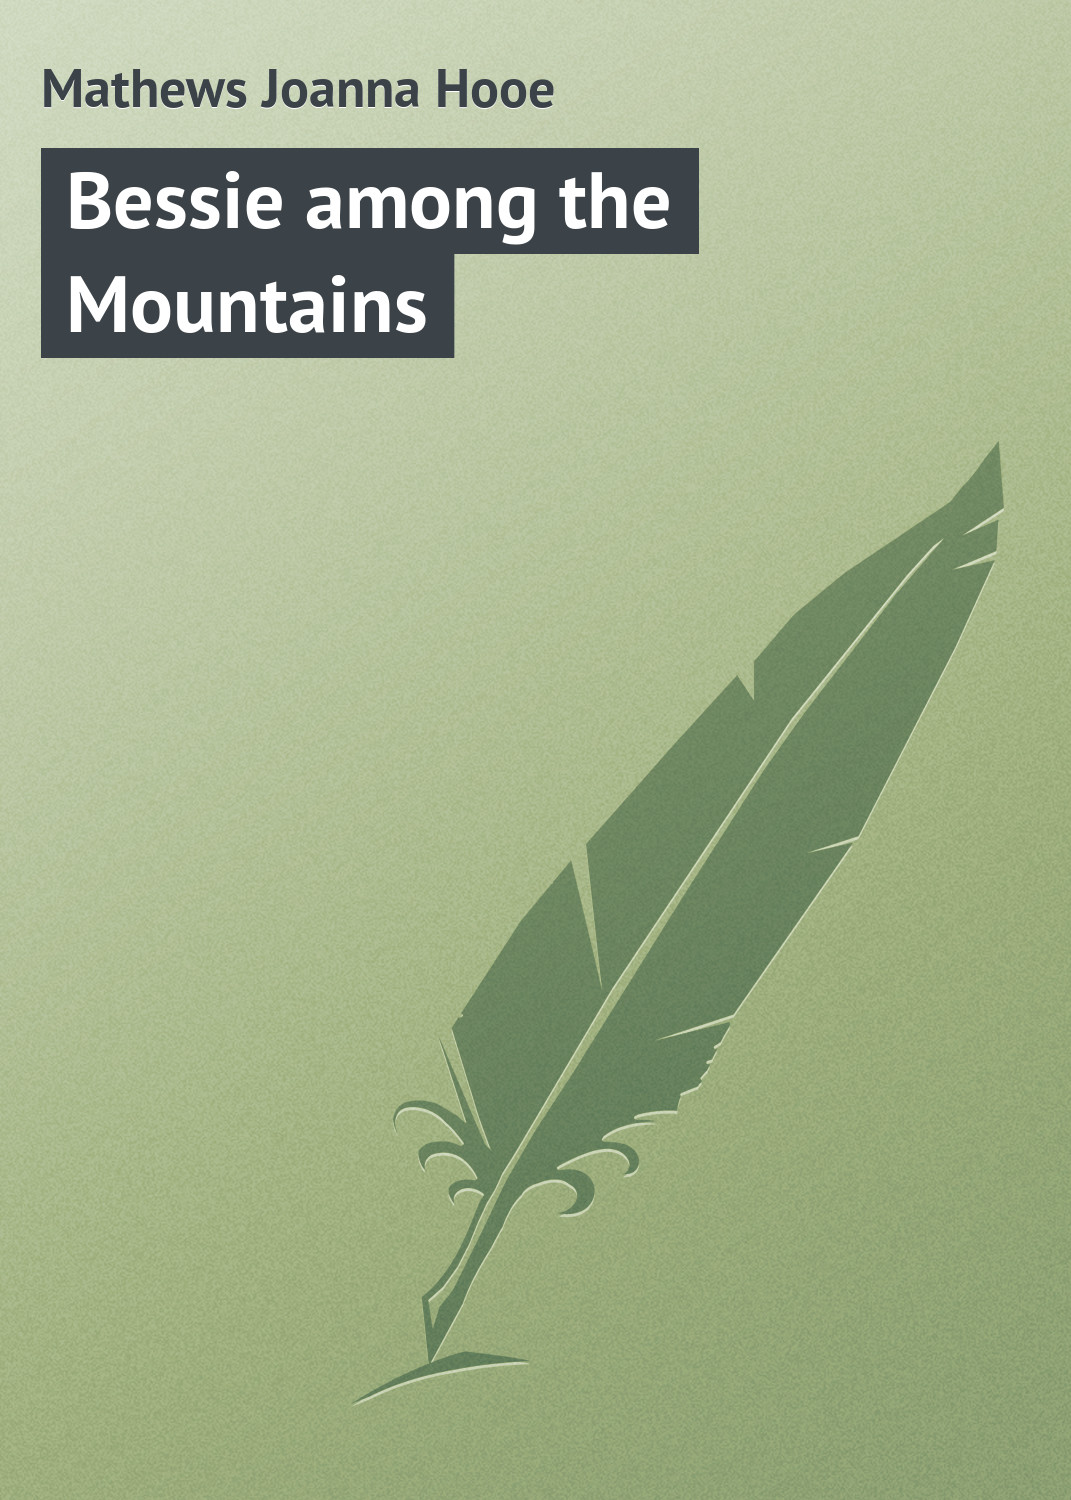 Книга Bessie among the Mountains из серии , созданная Joanna Mathews, может относится к жанру Зарубежная классика. Стоимость электронной книги Bessie among the Mountains с идентификатором 23154667 составляет 5.99 руб.